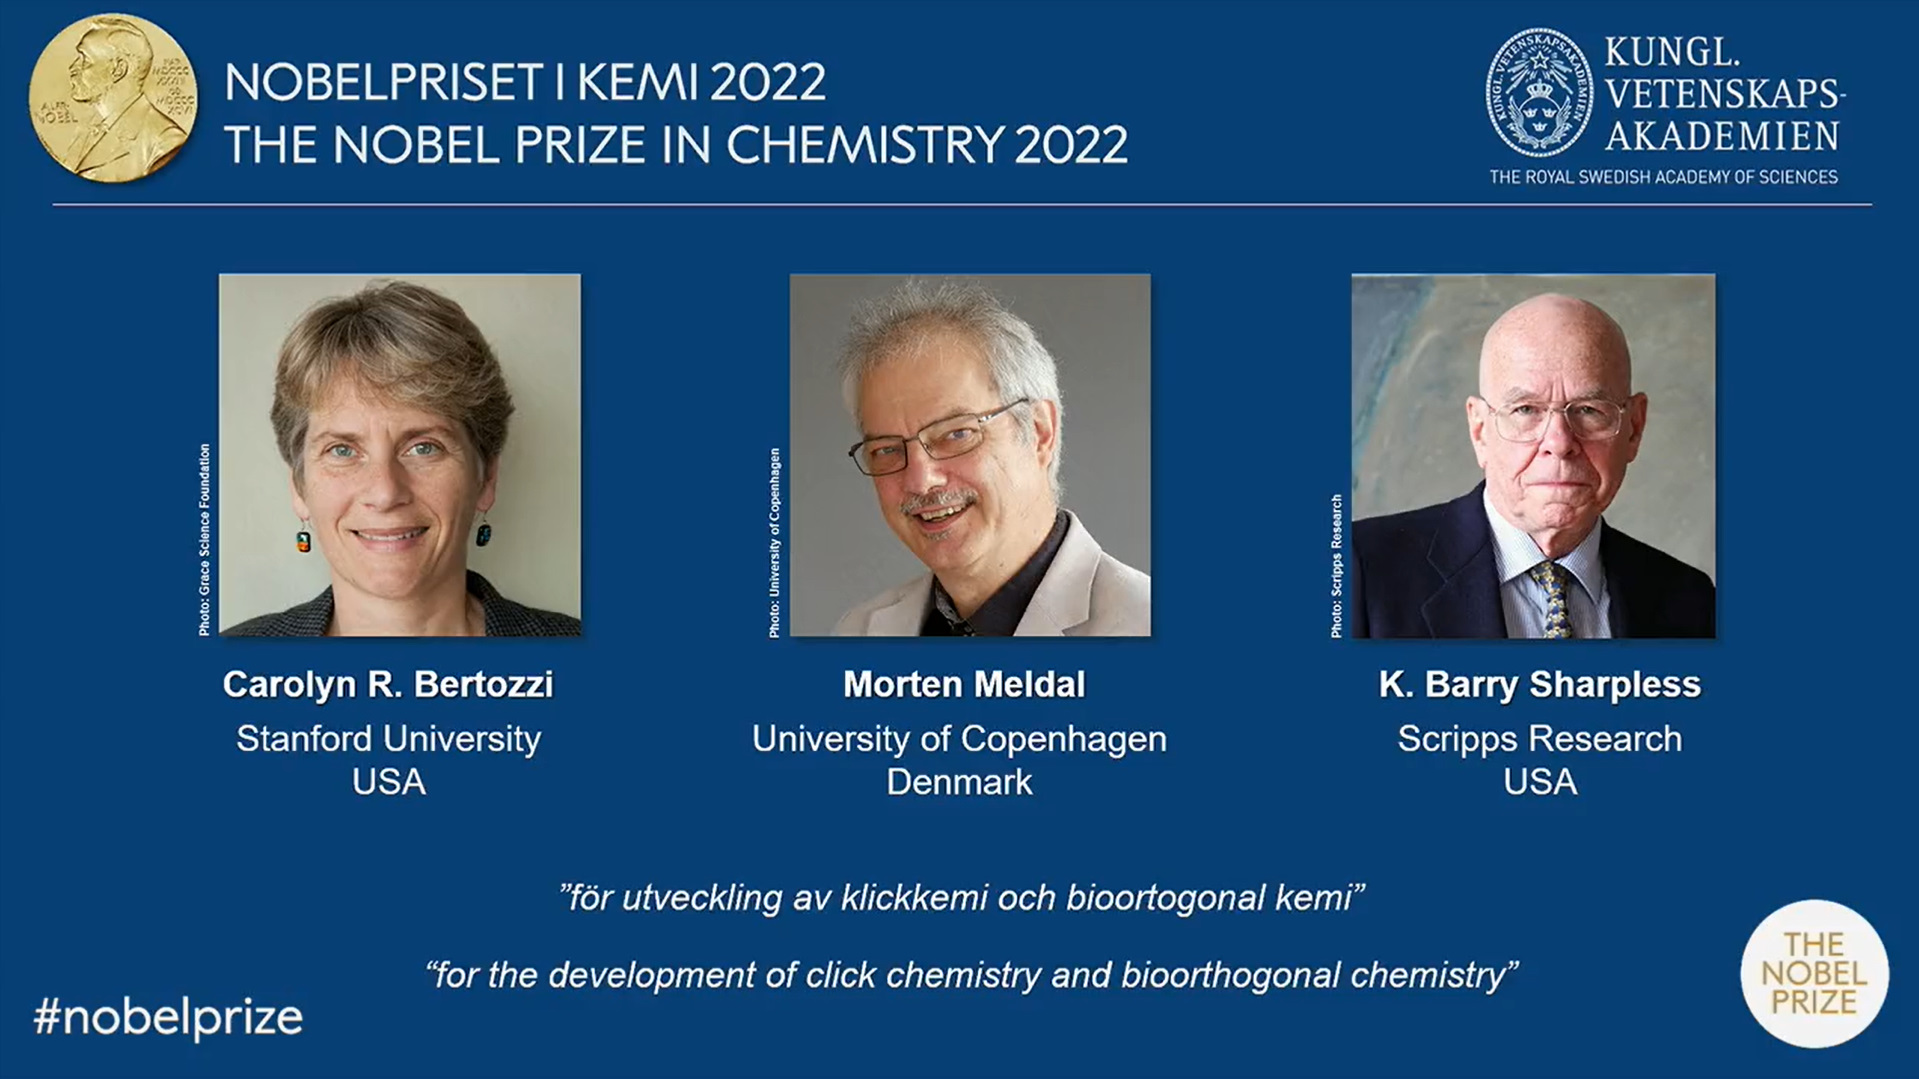 三位科学家共获诺贝尔化学奖沙普利斯教授两度得奖| 瑞典皇家科学院| 斯 